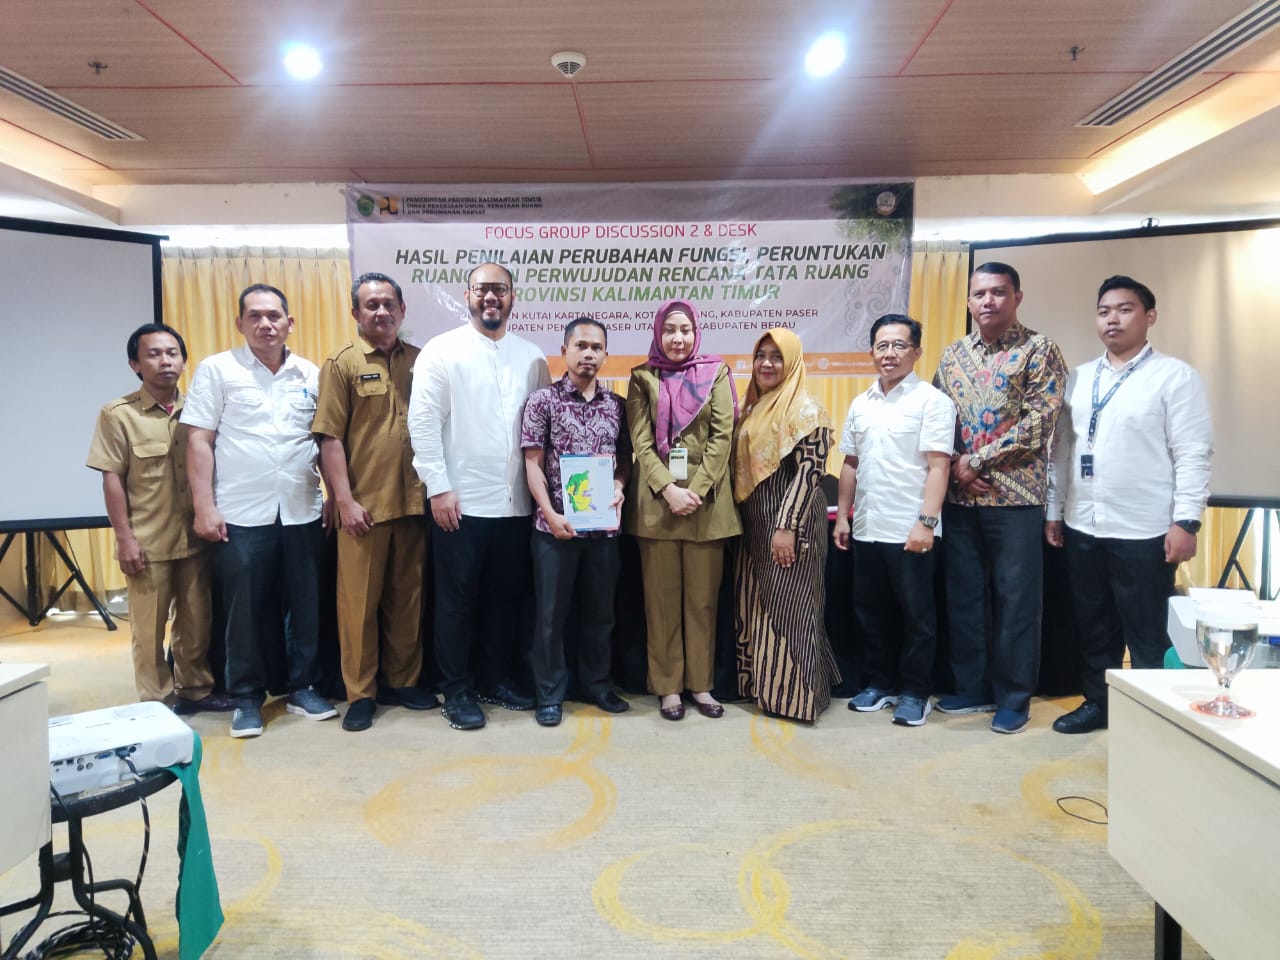 FGD  dan Desk  Hasil Penilaian Perubahan Fungsi Peruntukan Ruang dan Perwujudan Rencana Tata Ruang Provinsi Kalimantan Timur